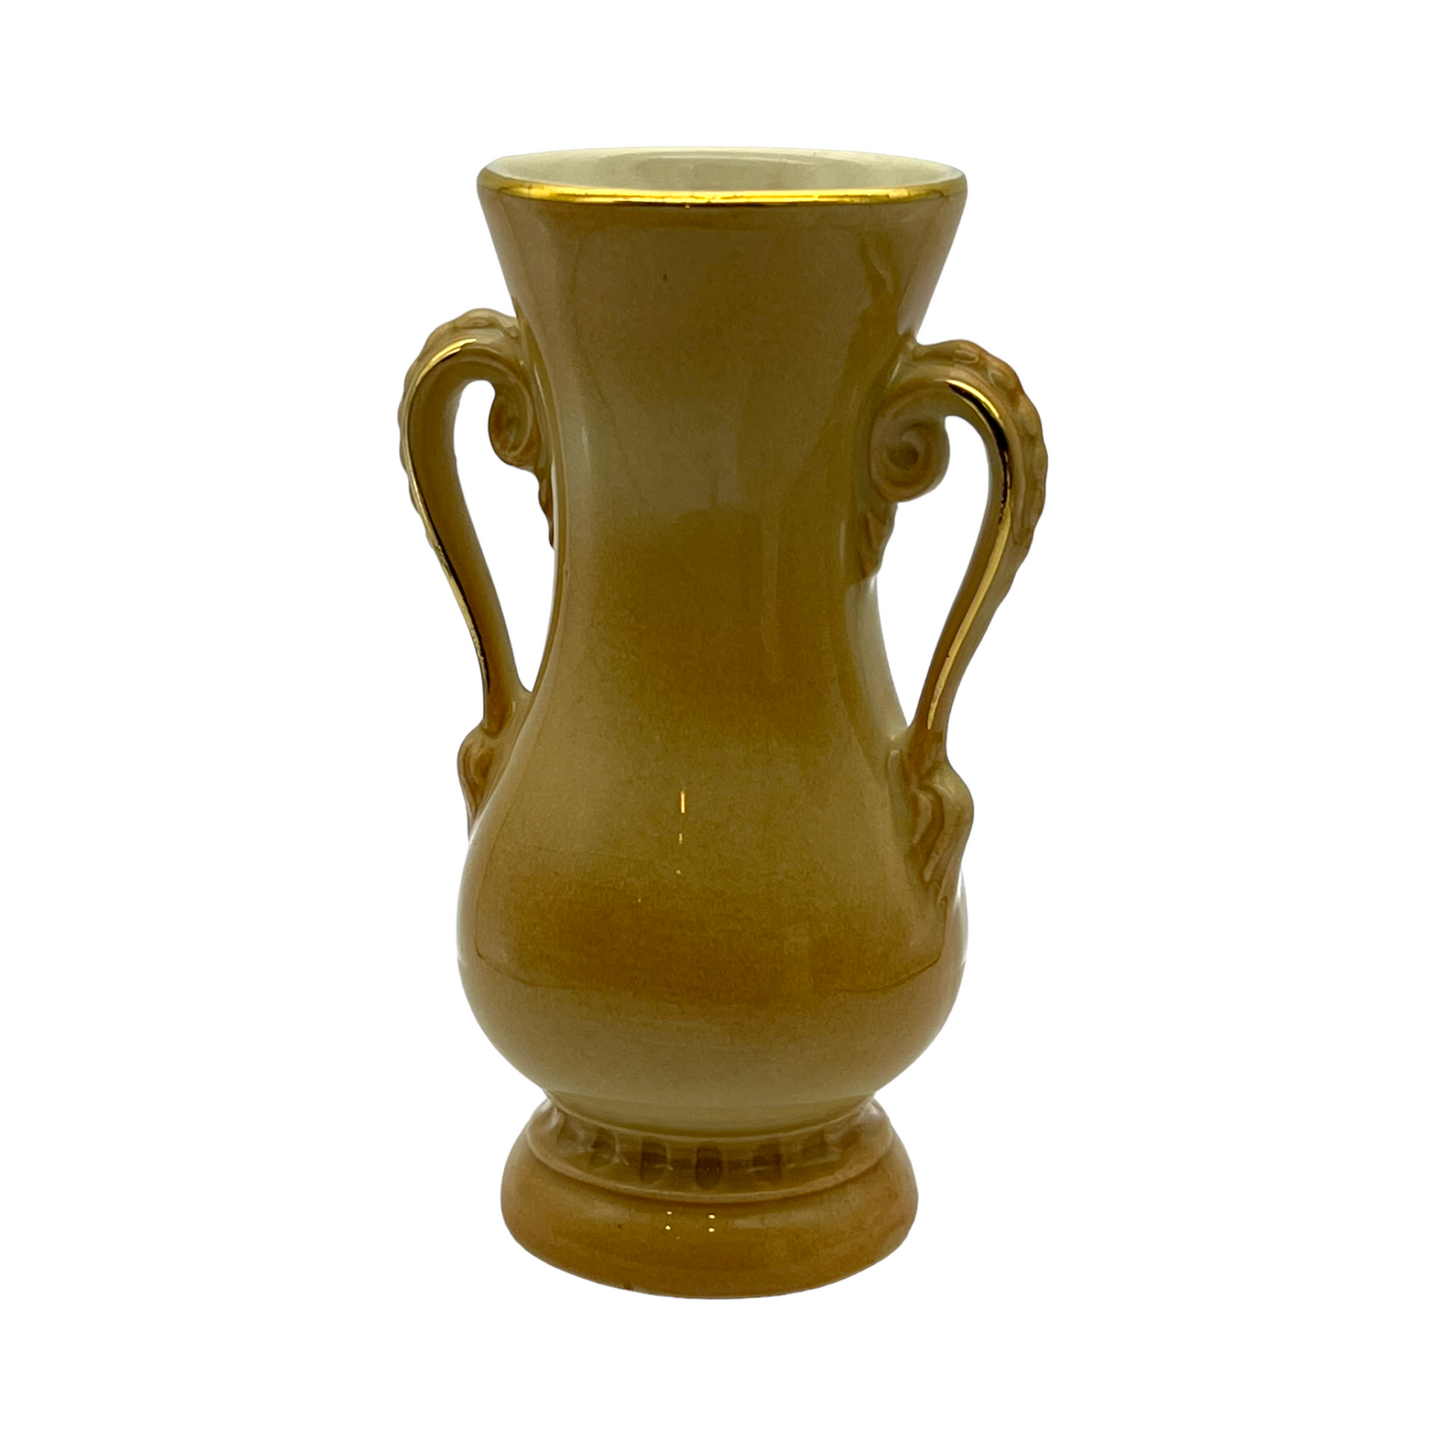 Royal Copley - Deco Two Handle Vase - Vintage - 6.25"